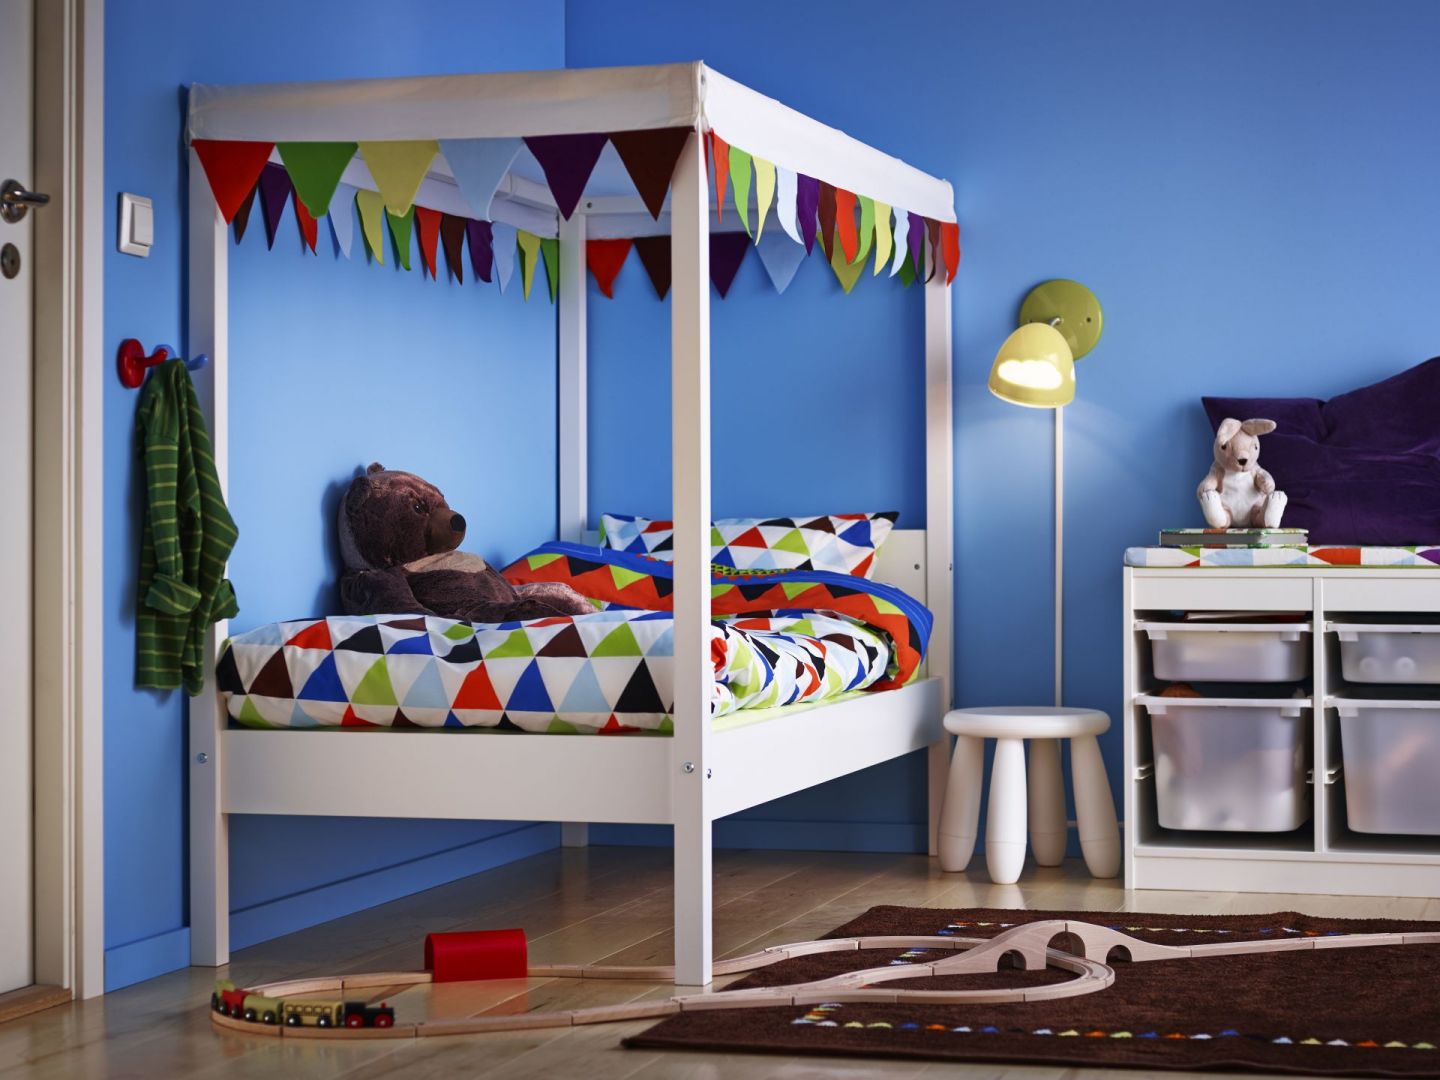 Łóżko w pokoju dziecka nie powinno być takim zwyczajnym meblem. Wystarczy baldachim czy dekoracja w postaci girlandy, aby mebel ten nabrał zupełnie nowego wyrazu. Fot. IKEA